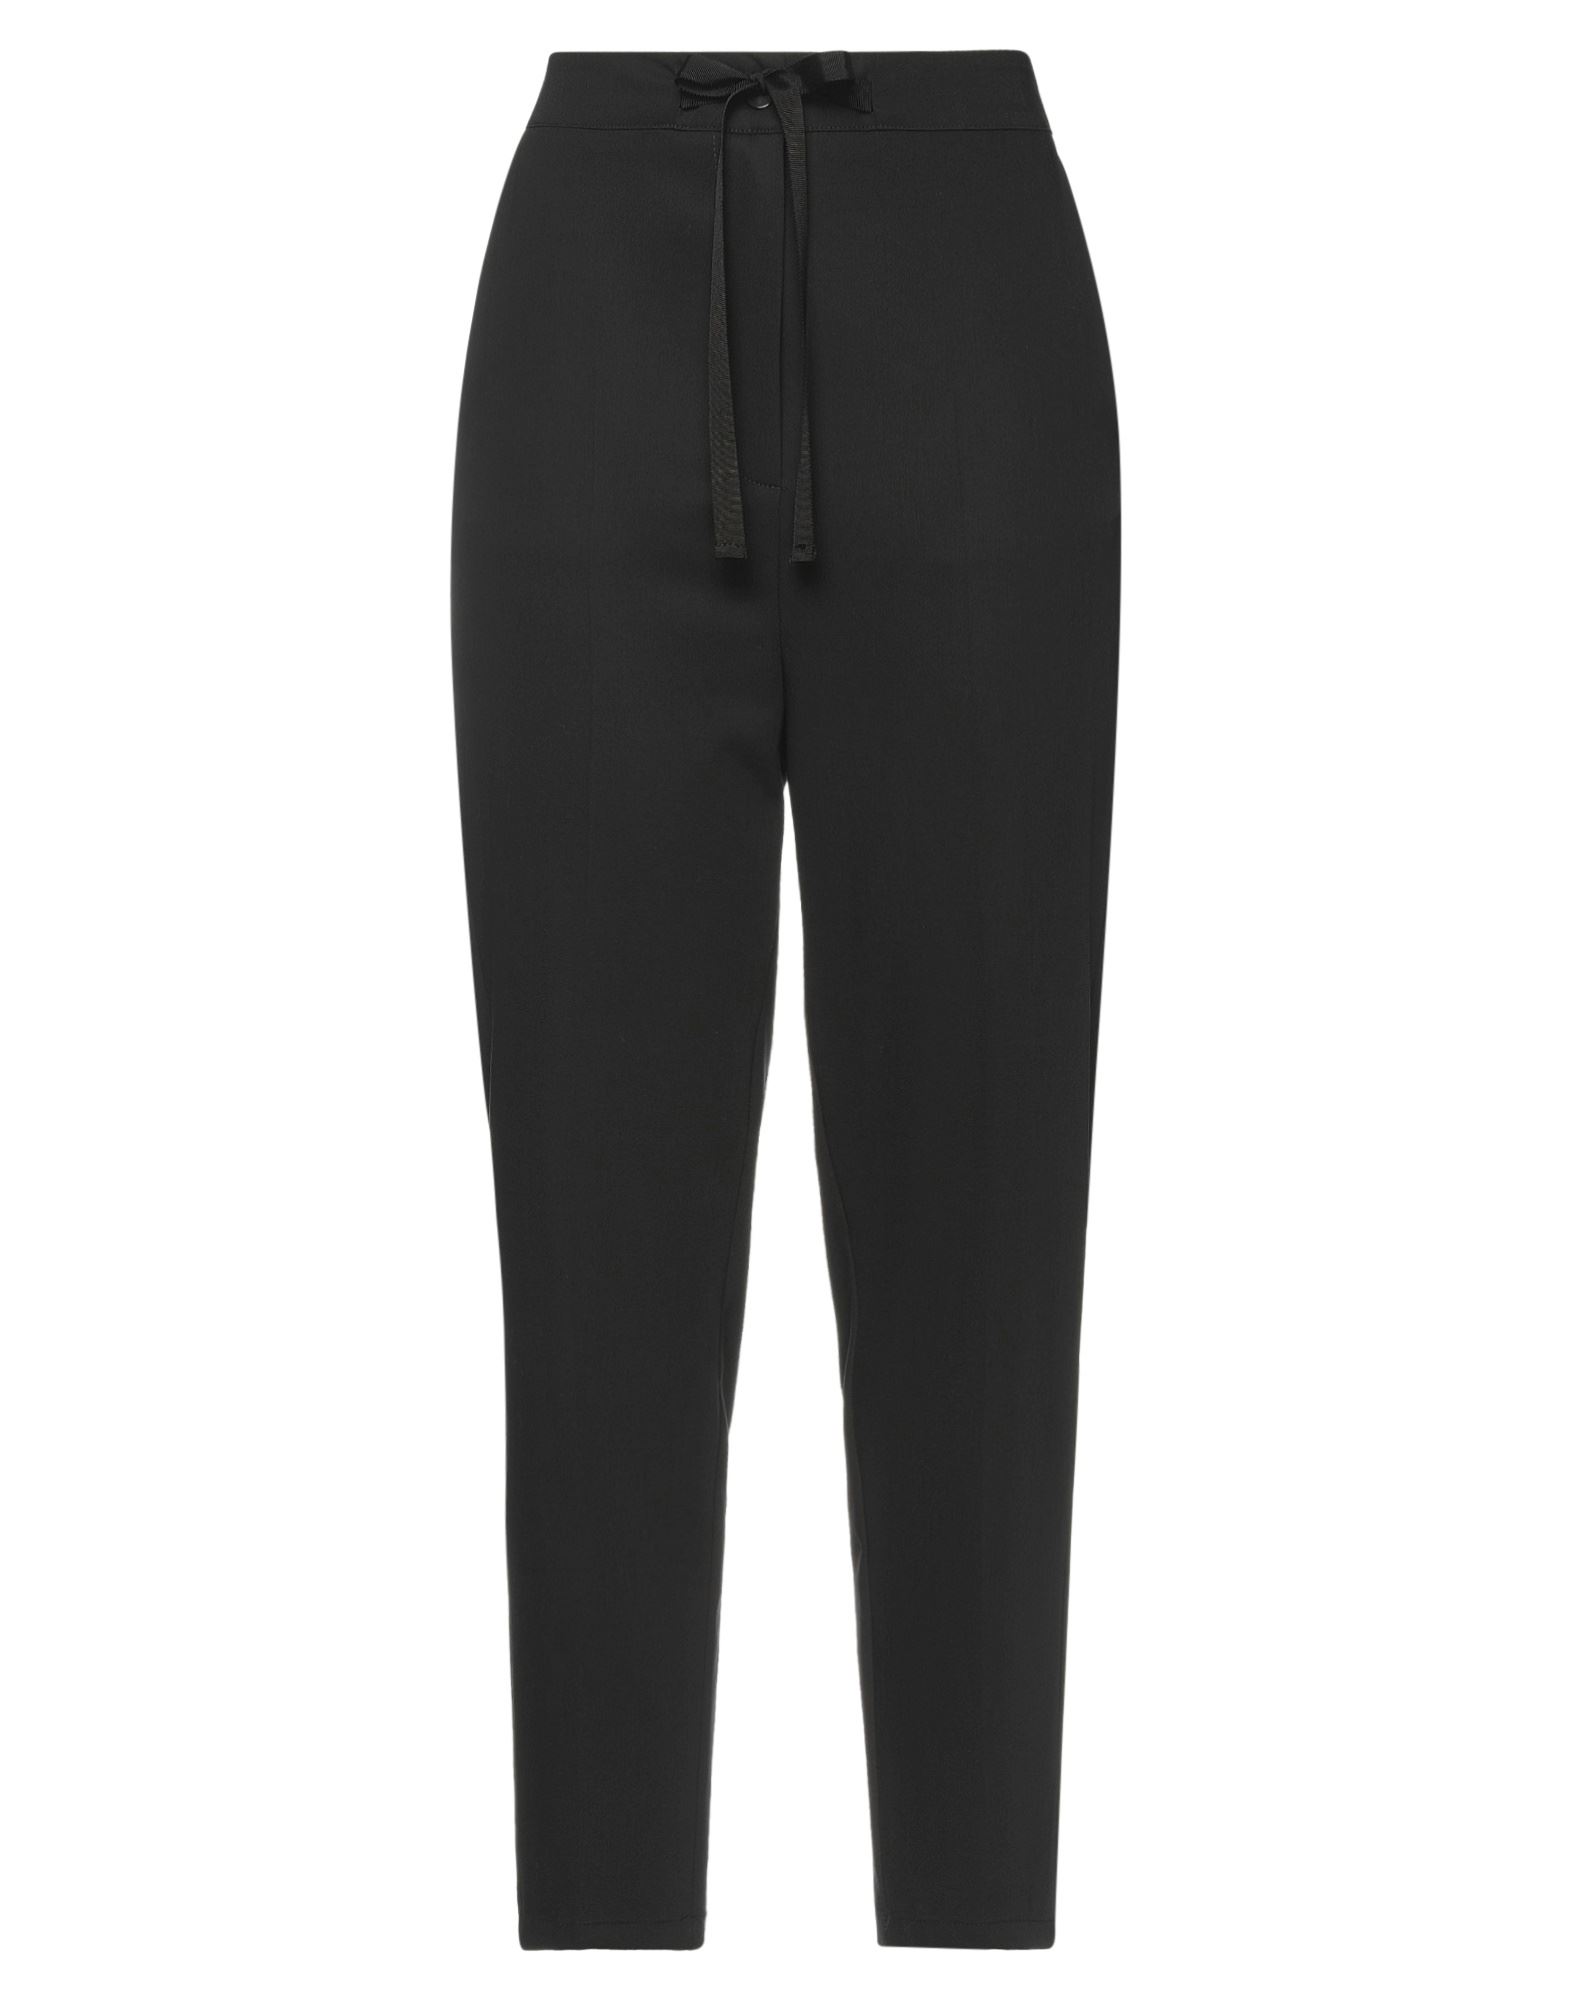 Shop Alessia Santi Woman Pants Black Size 6 Polyester, Viscose, Elastane